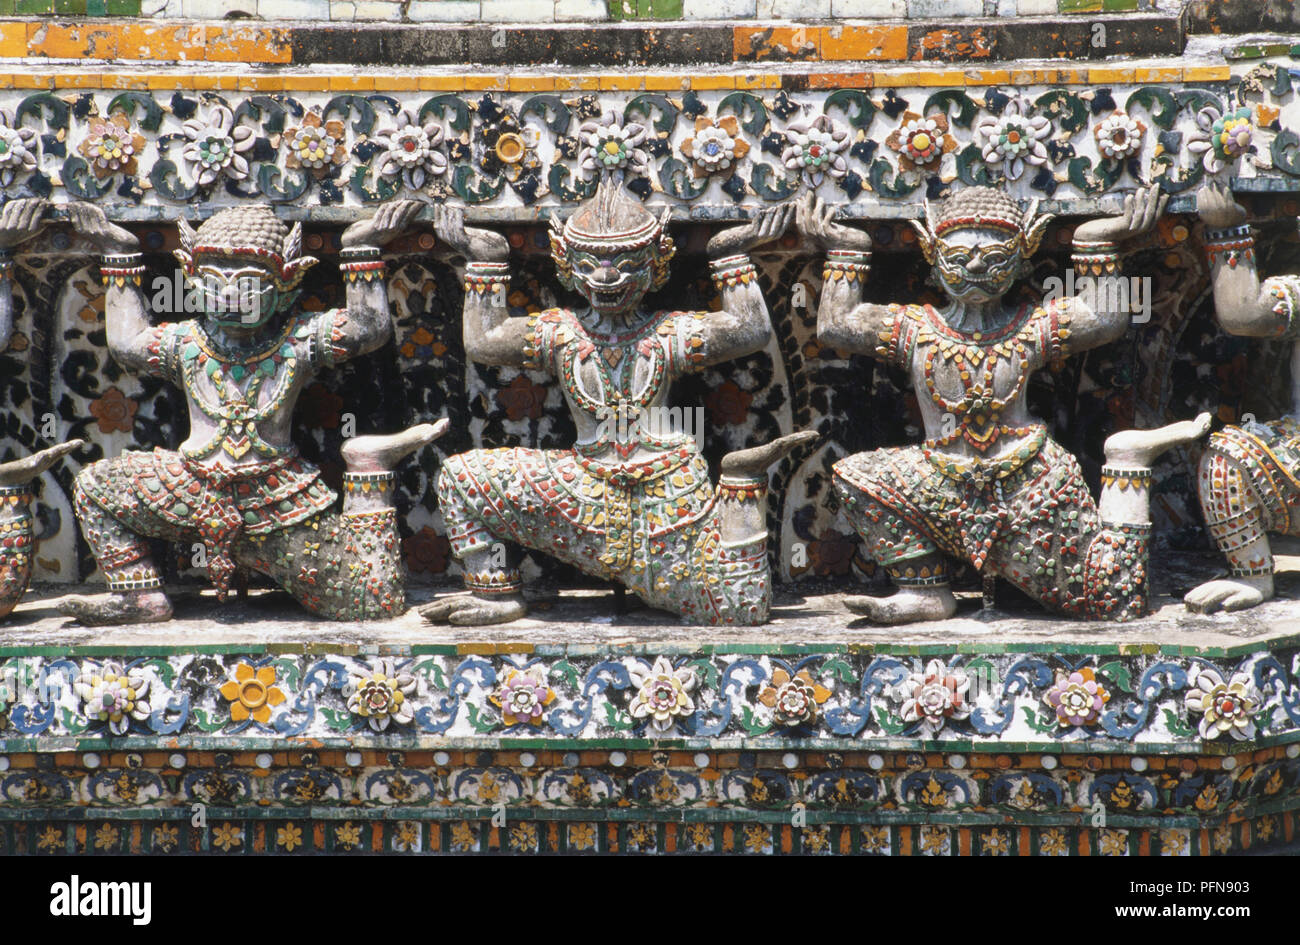 Thaïlande, Bangkok, Wat Arun, Thon buri, détail de la porcelaine colorée décorée de prang, statues de dieux holding up pilier, Close up. Banque D'Images